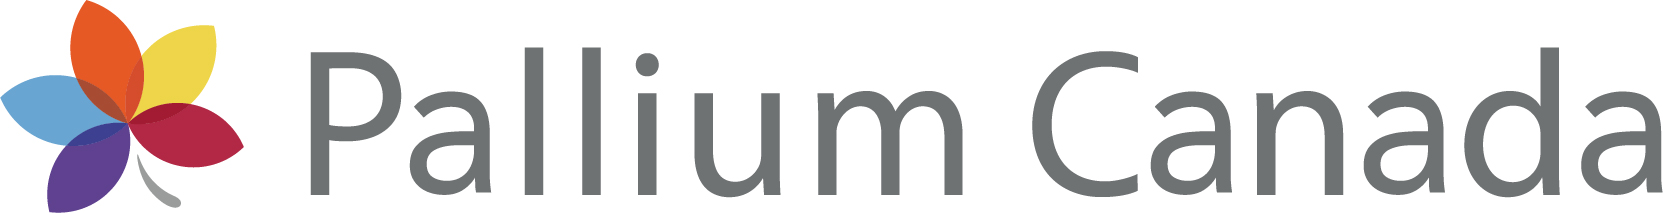 Pallium Canada logo